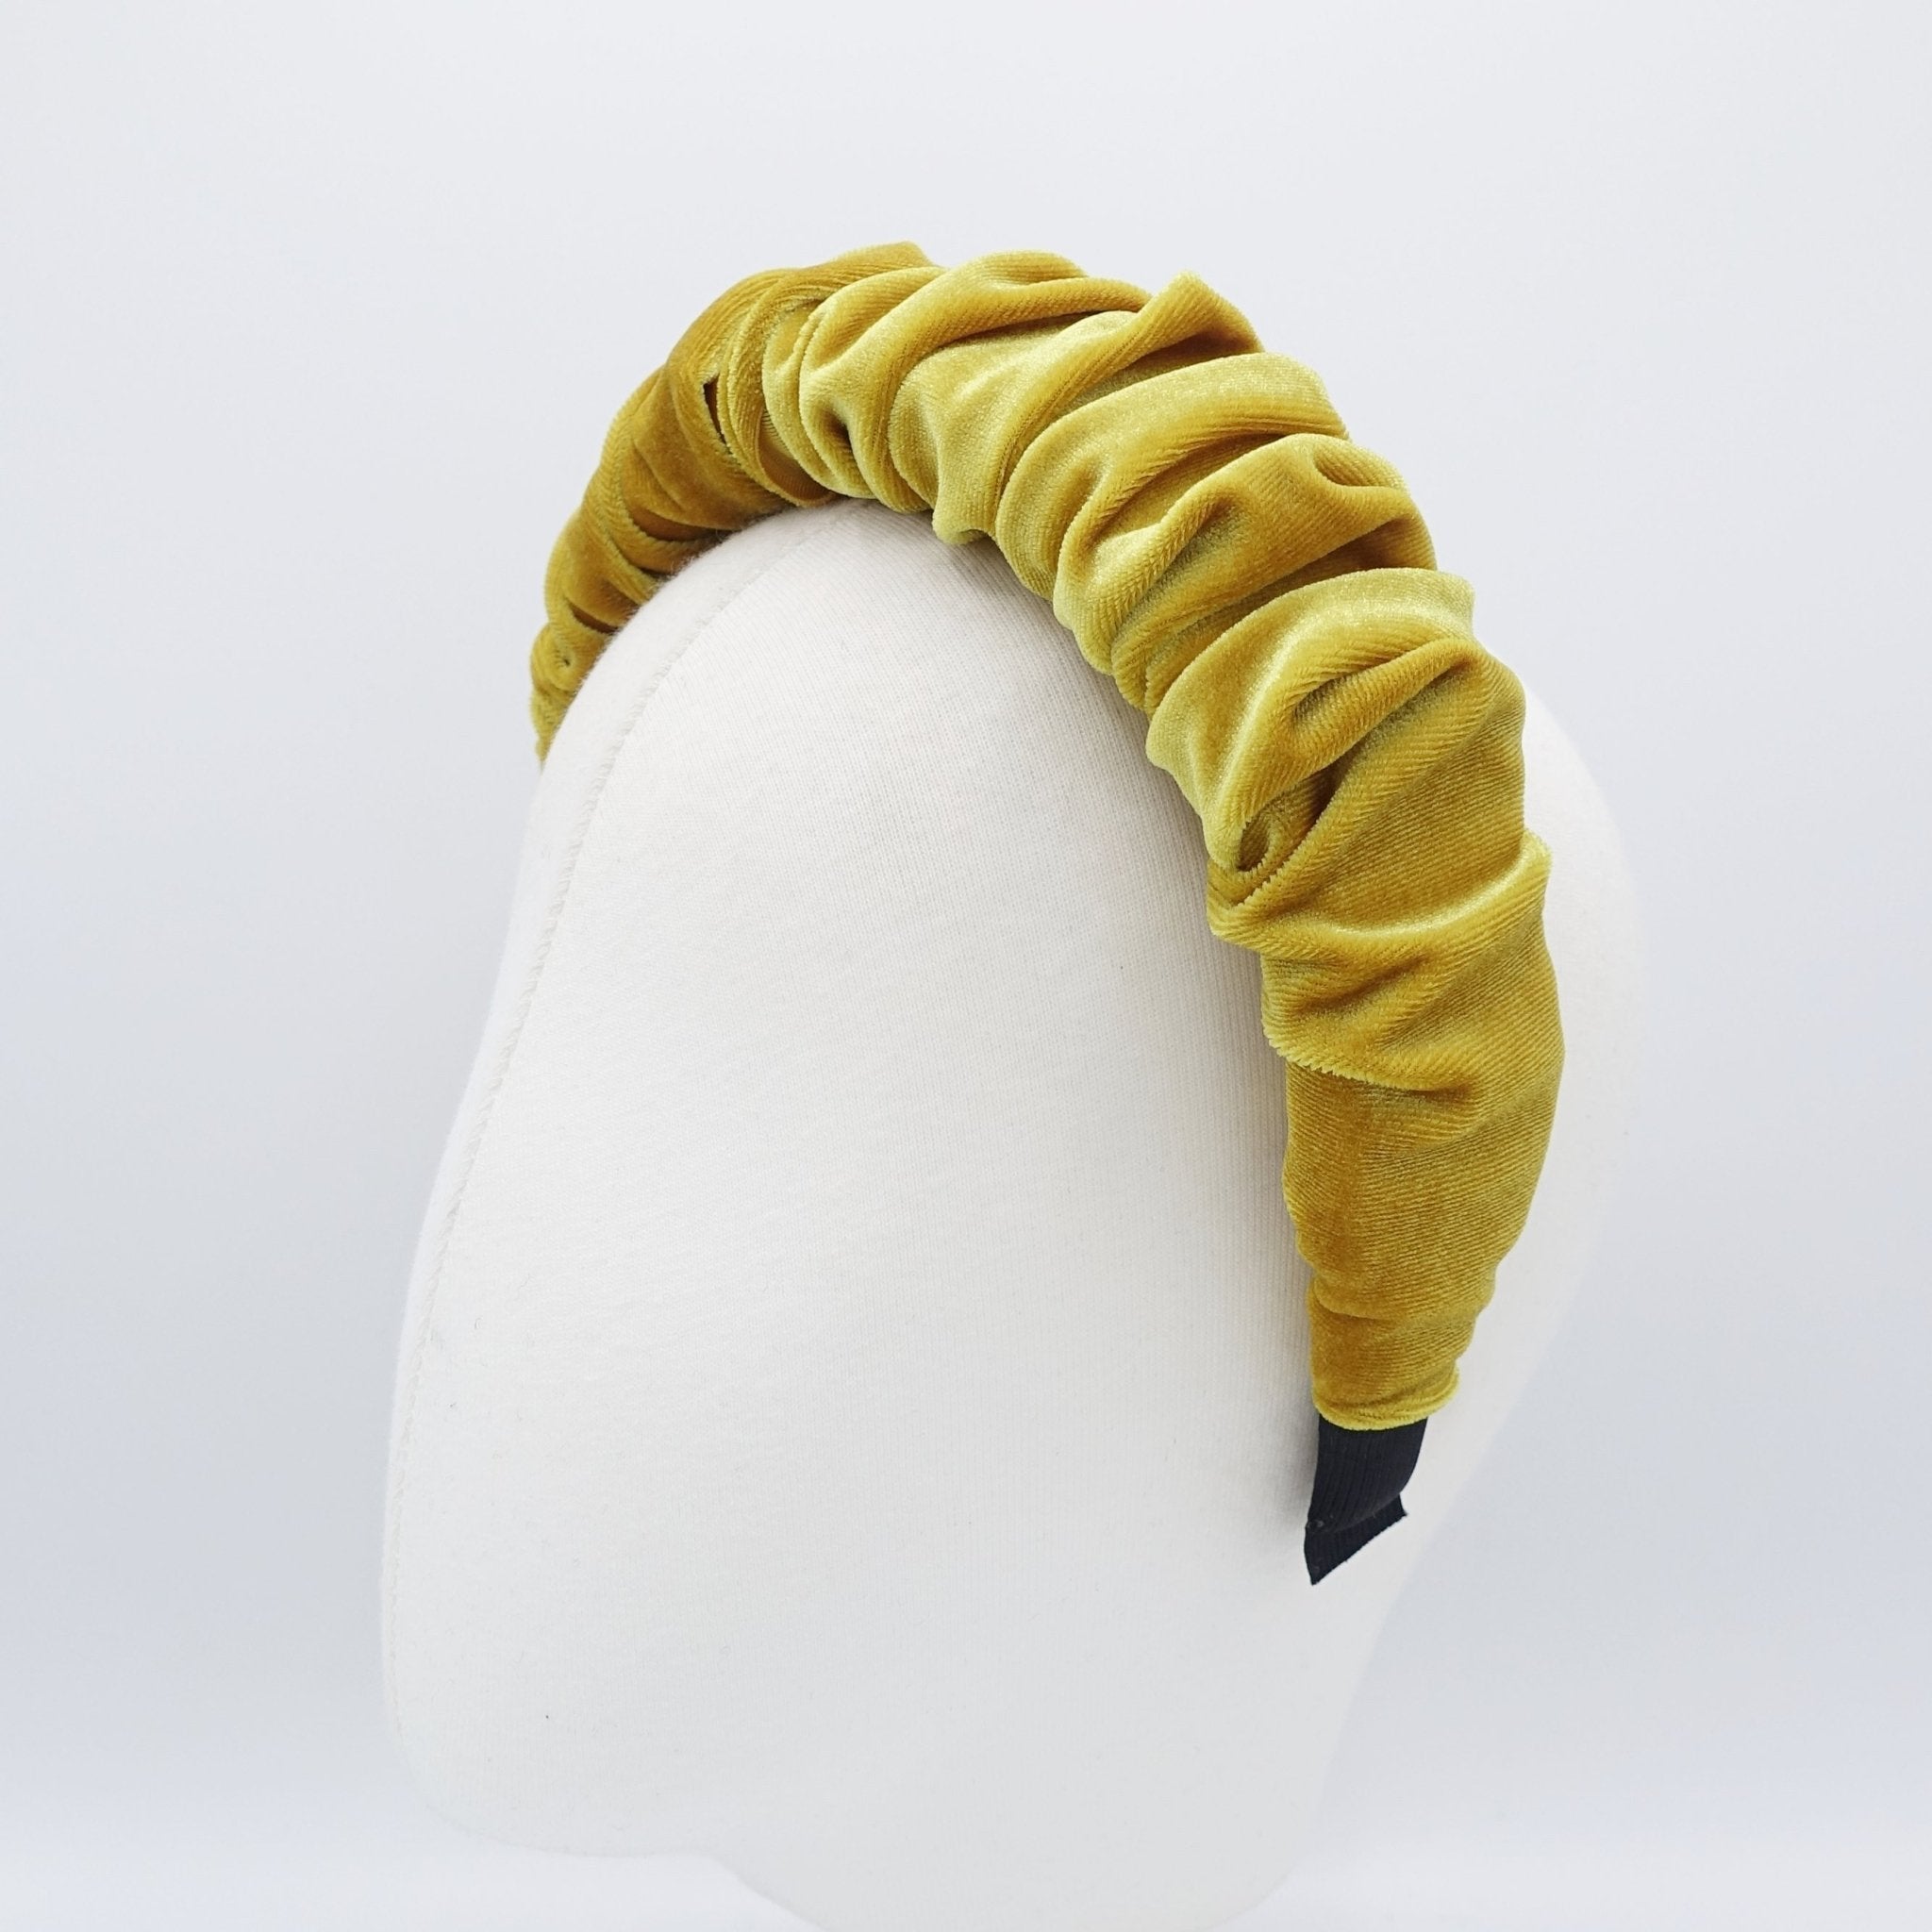 veryshine.com hairband/headband velvet padded and pleated headband stylish hairband hair accessory for women